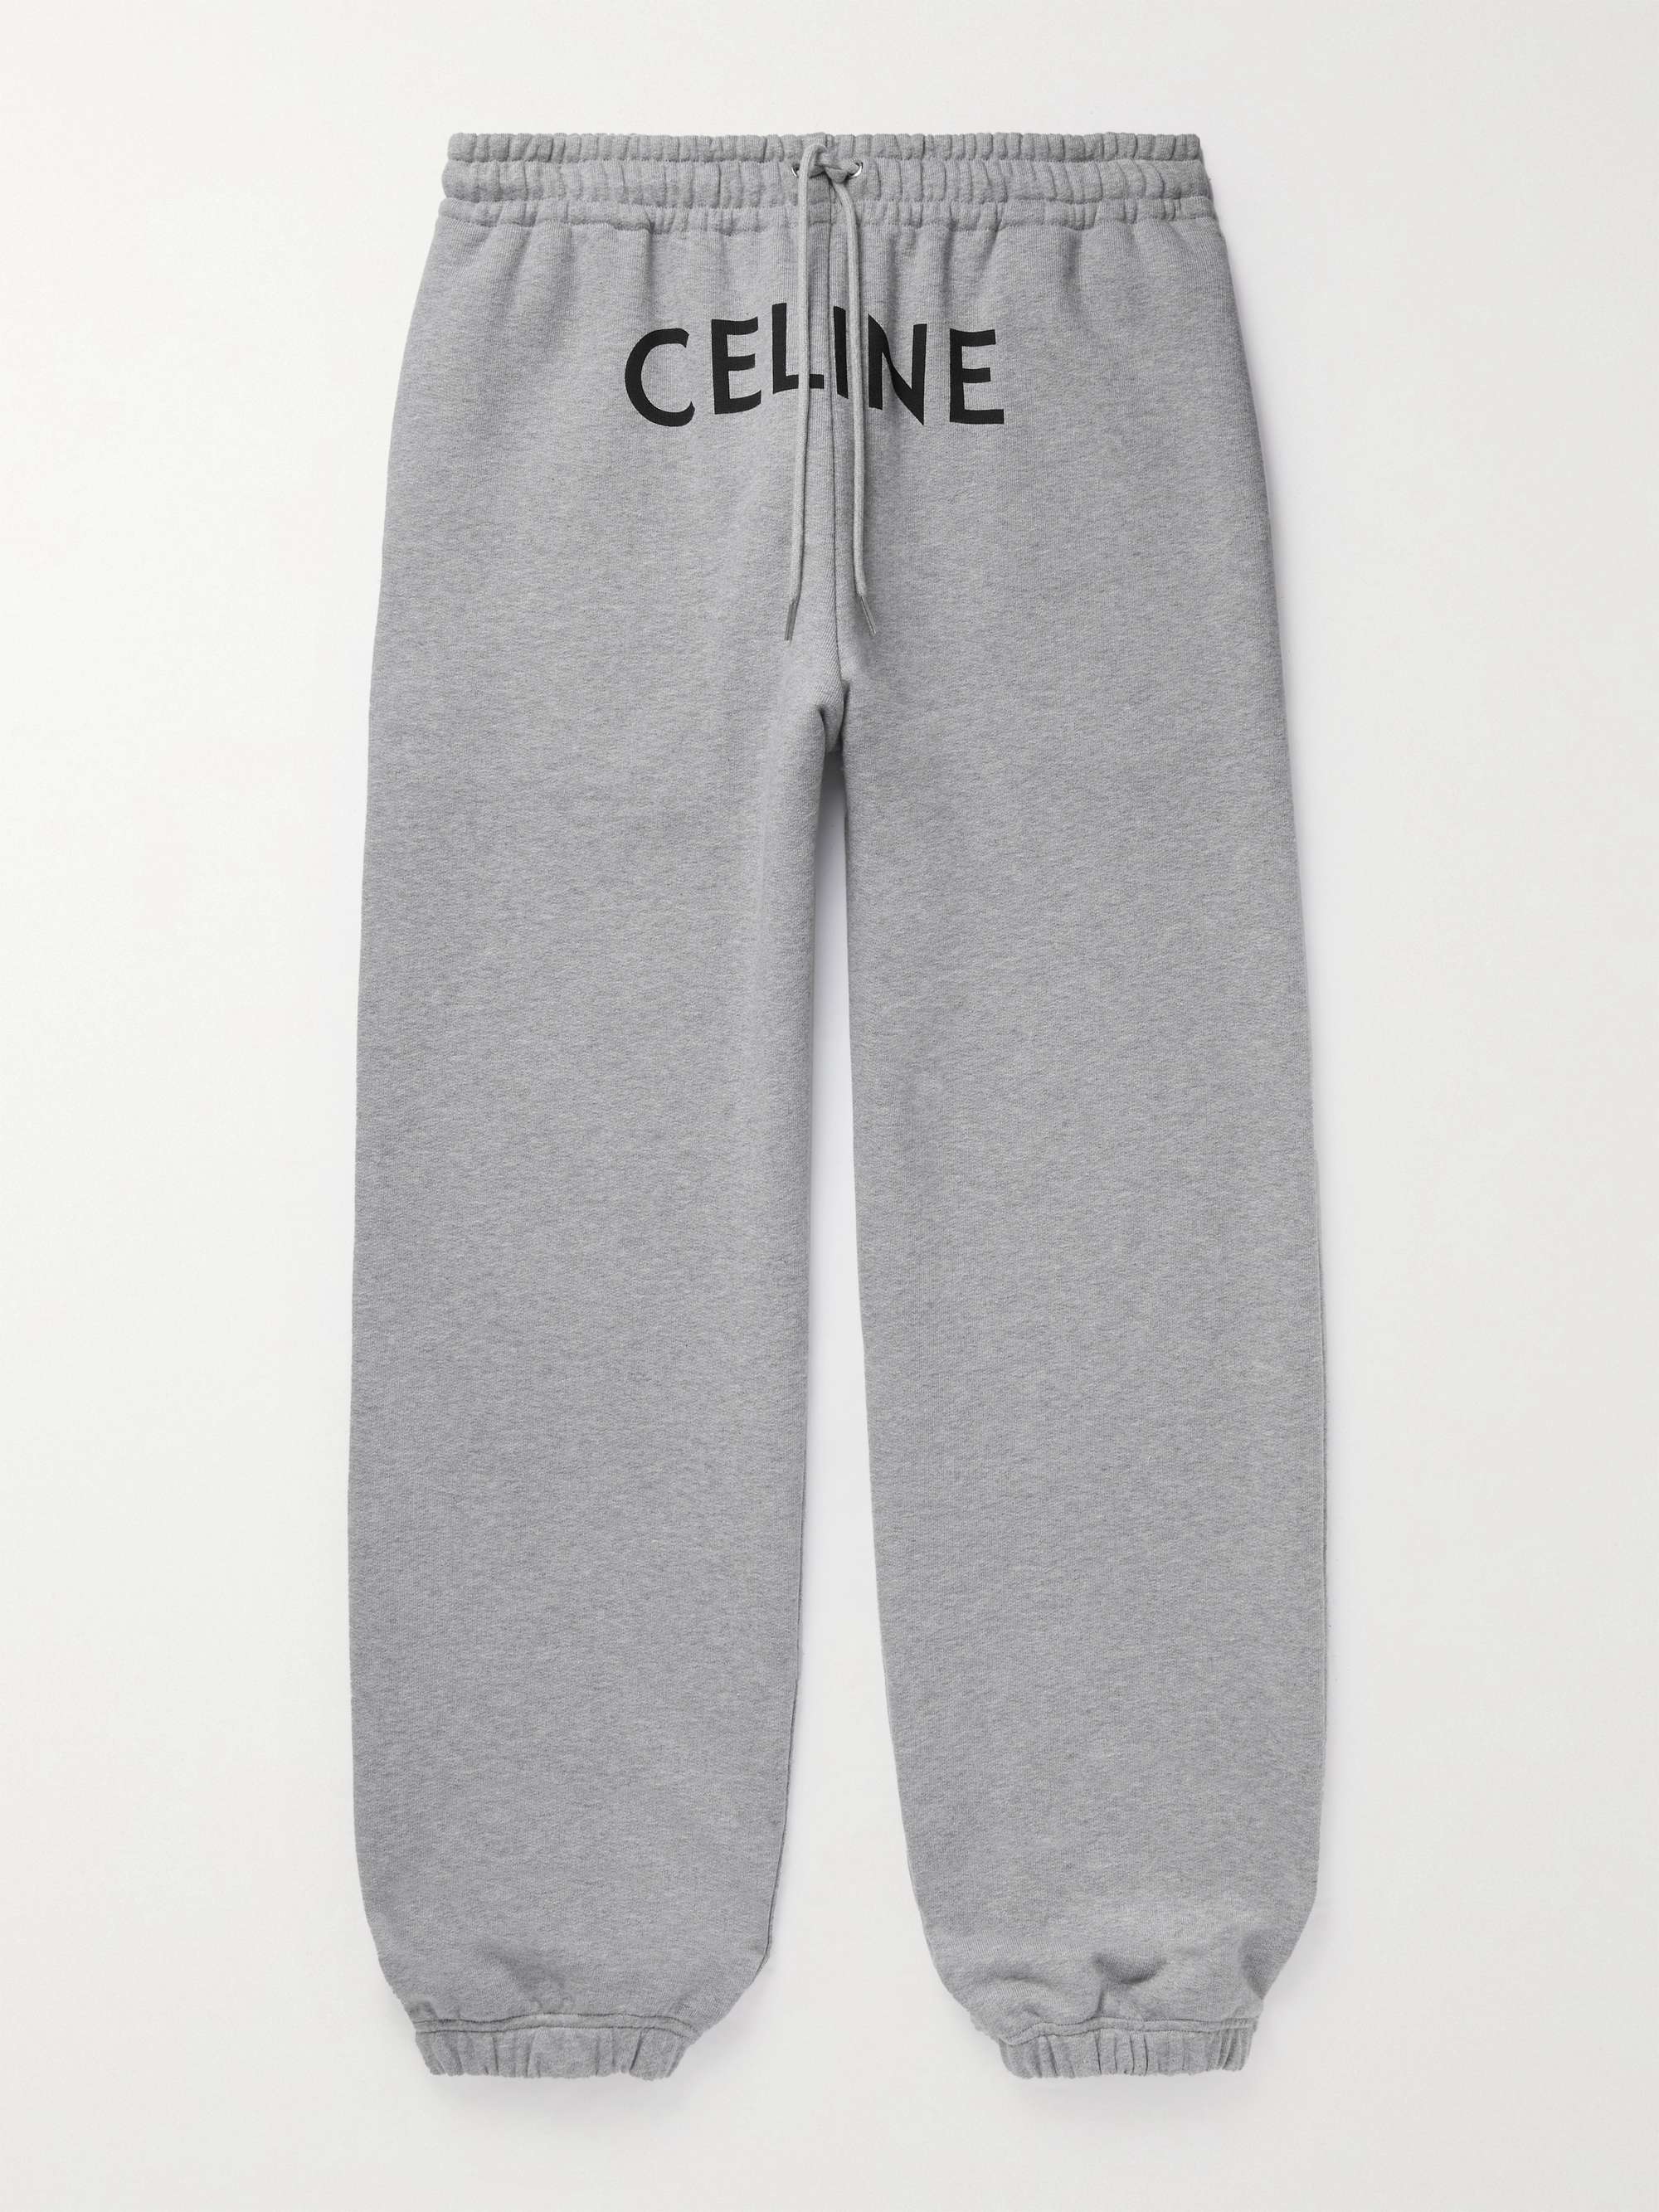 CELINE HOMME Logo-Print Cotton-Jersey Sweatpants